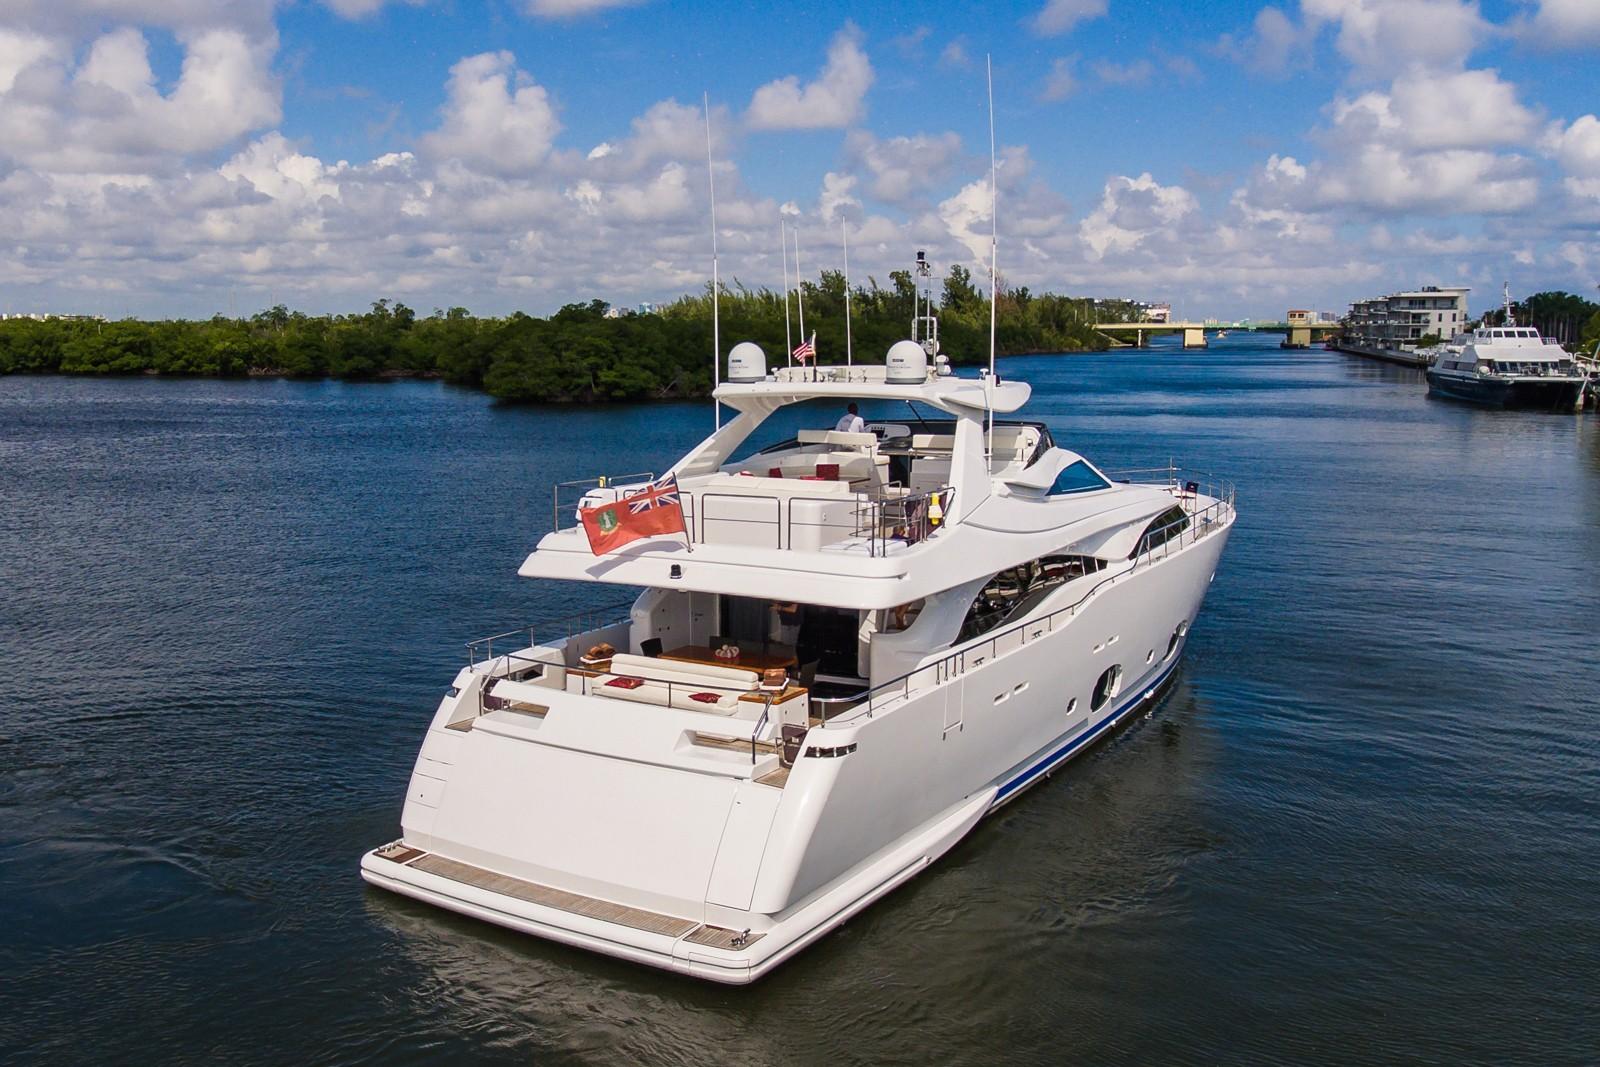 42 feet yacht for sale